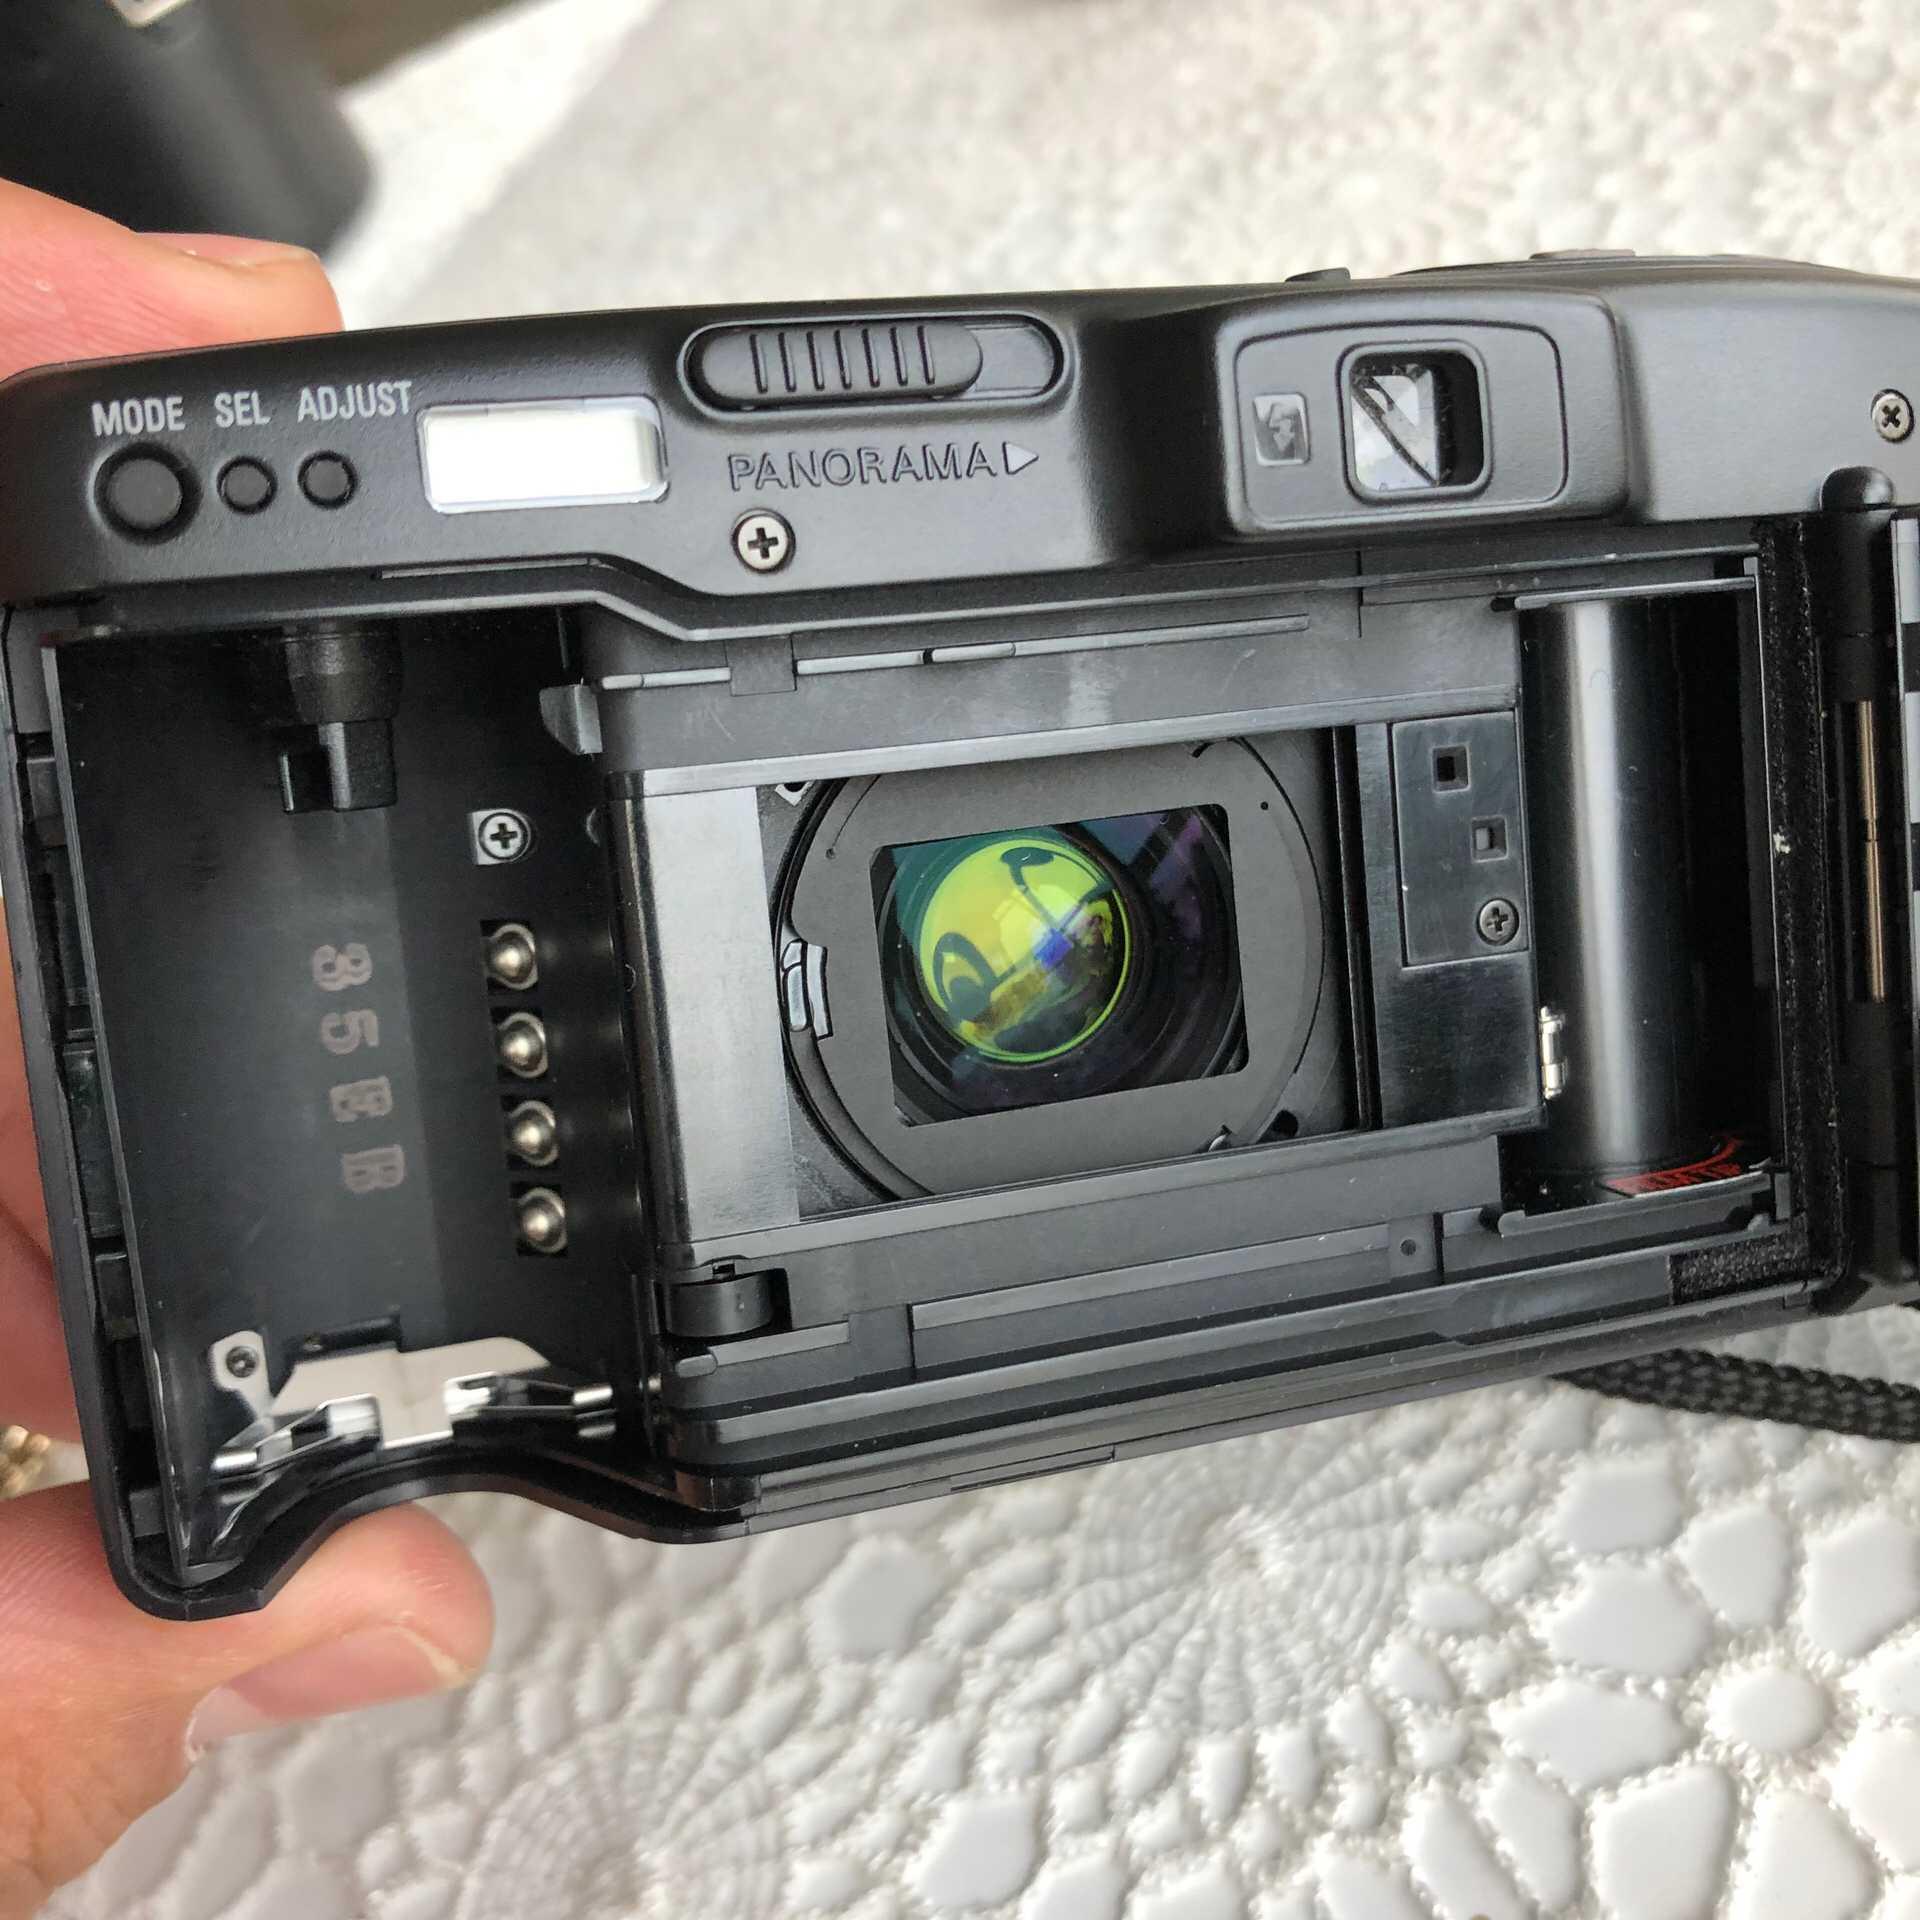 Изображение товара: Камера Nikon Zoom 500 AF компактная с объективом зума Nikon 38-105 мм